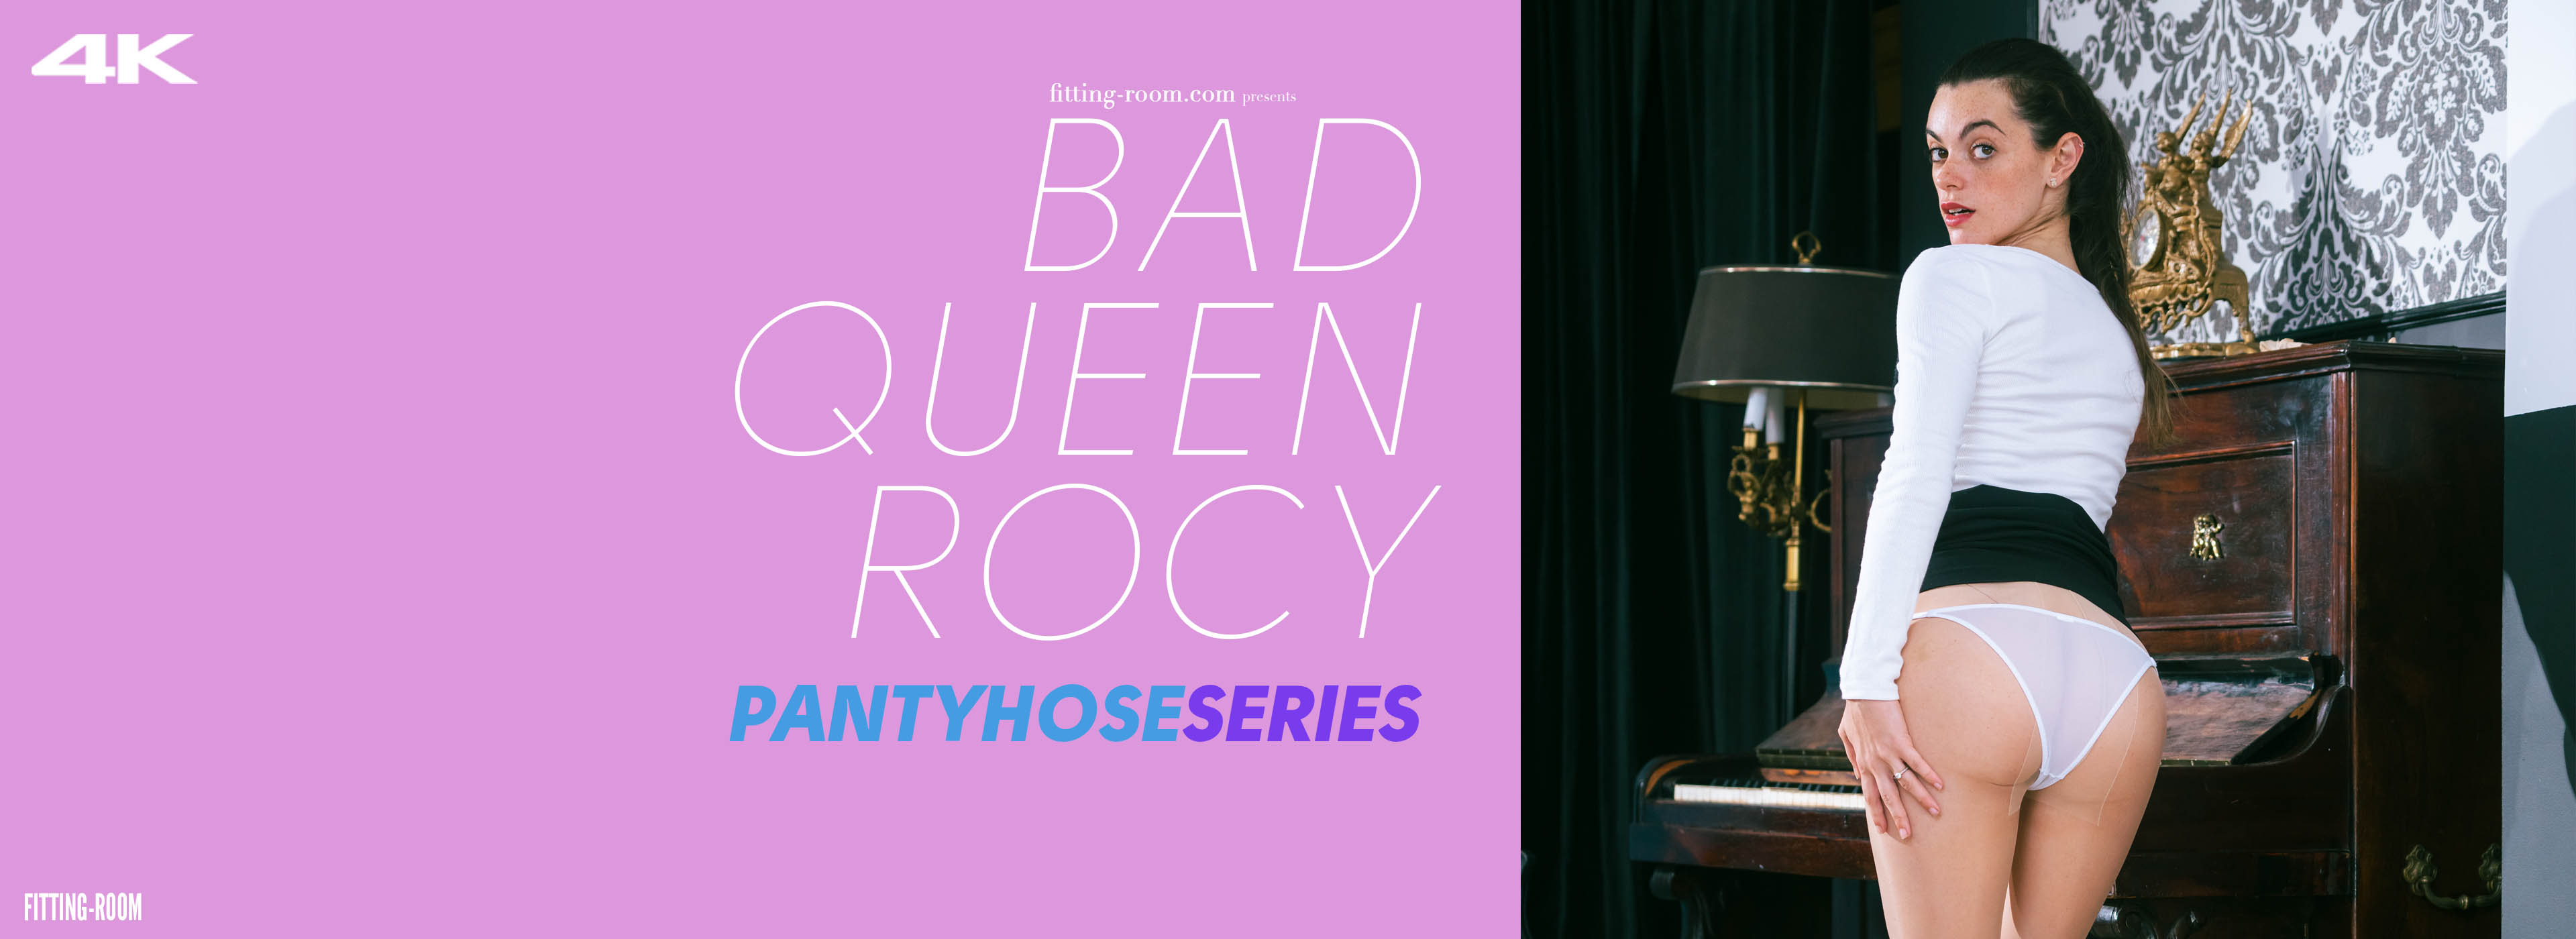 Bad Queen Rocy | Your New Secretary